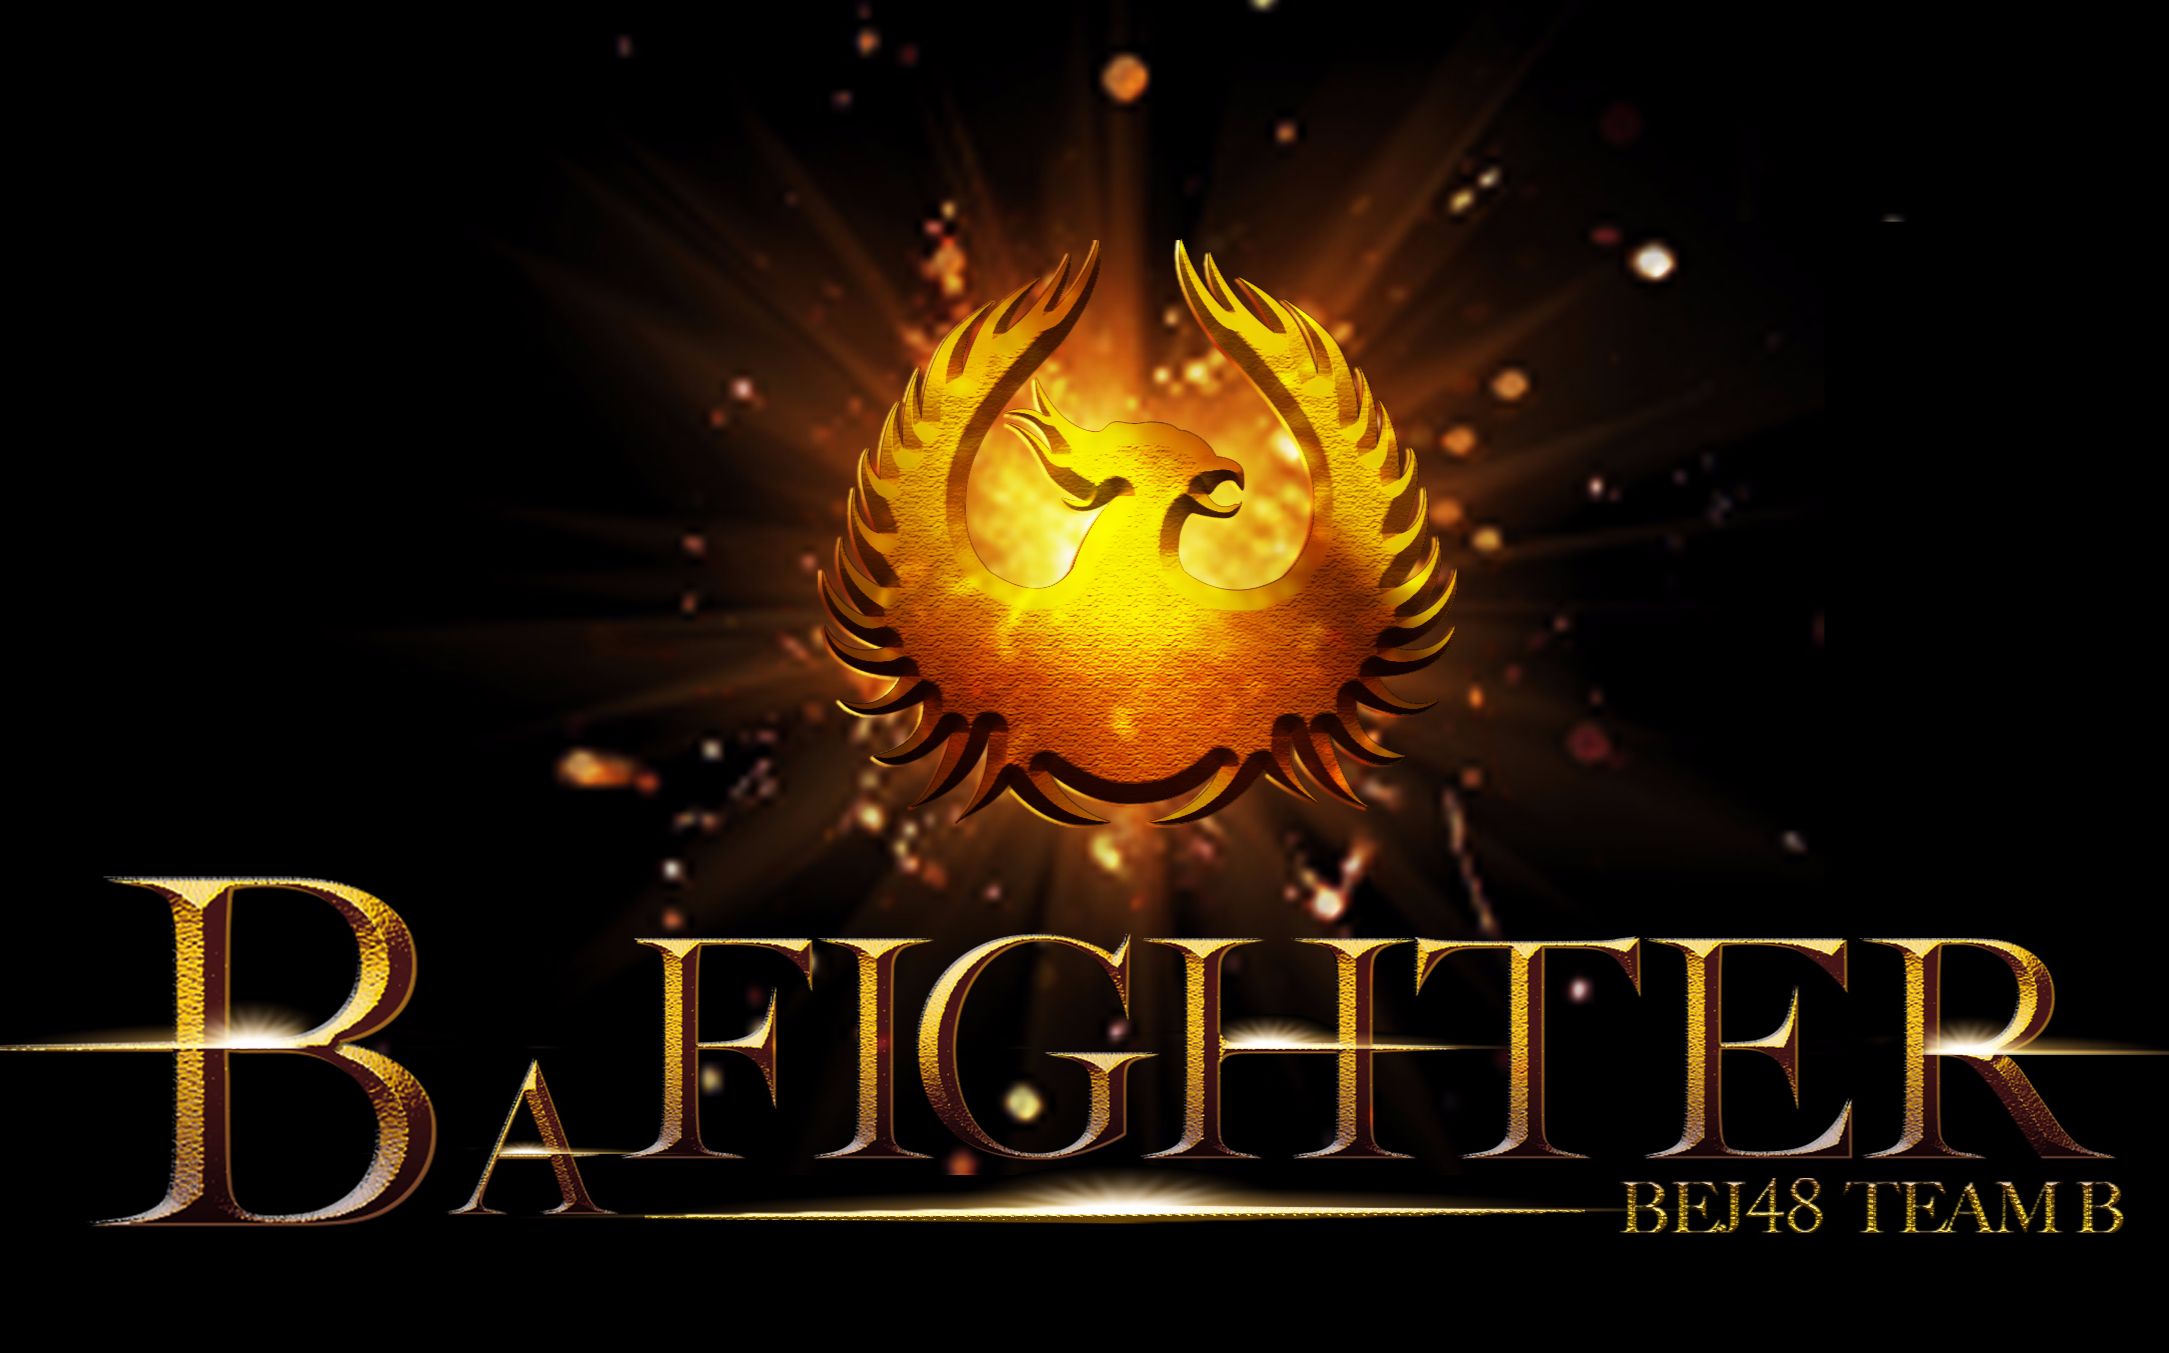 [图]【BEJ48】Team B原创公演《B A FIGHTER》宣传片完整版